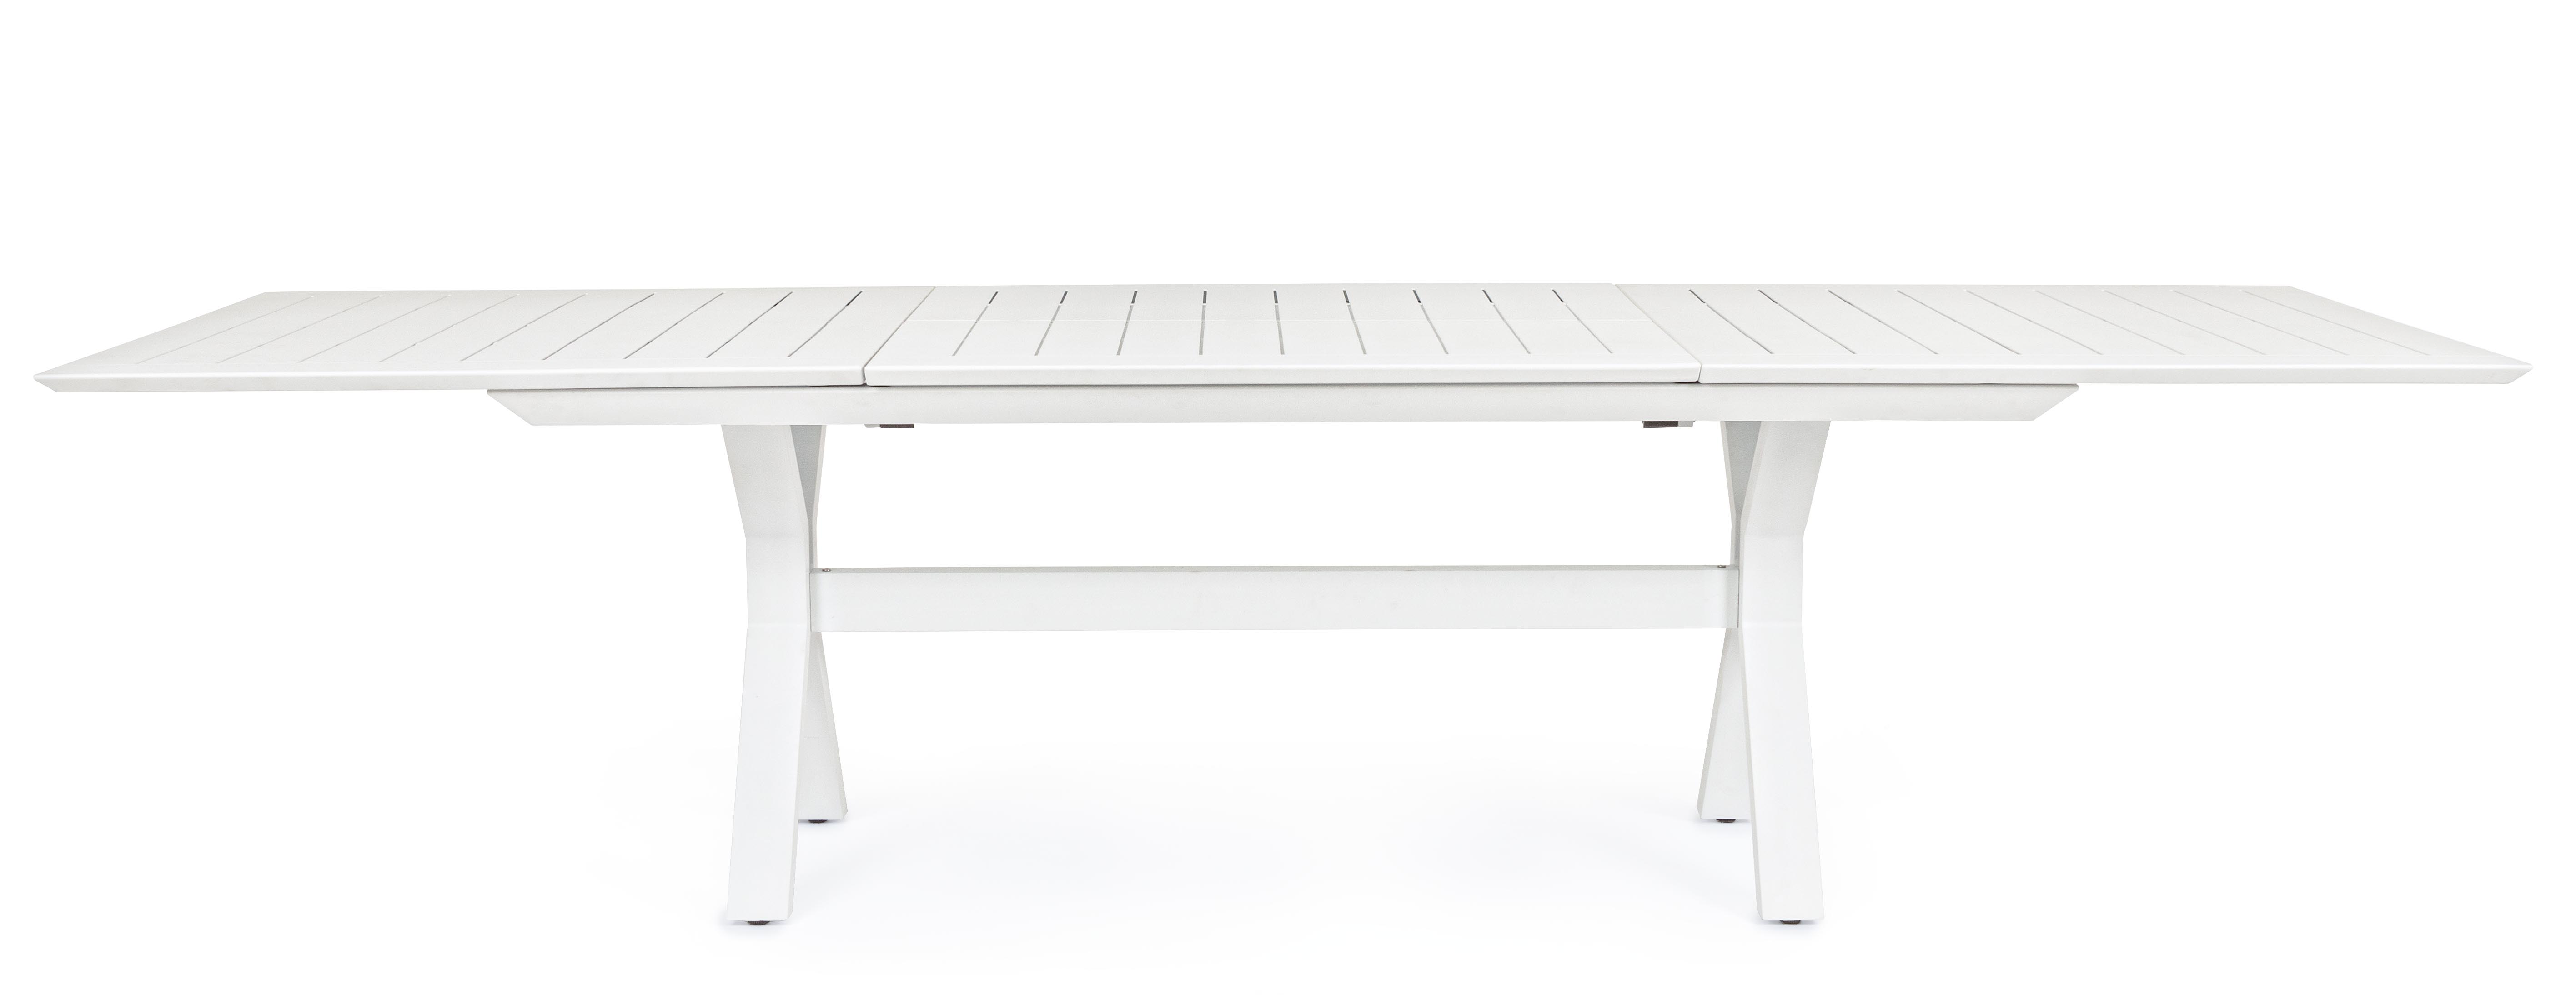 Gartentisch weiß | ausziehbar KENYON  200 - 300 cm